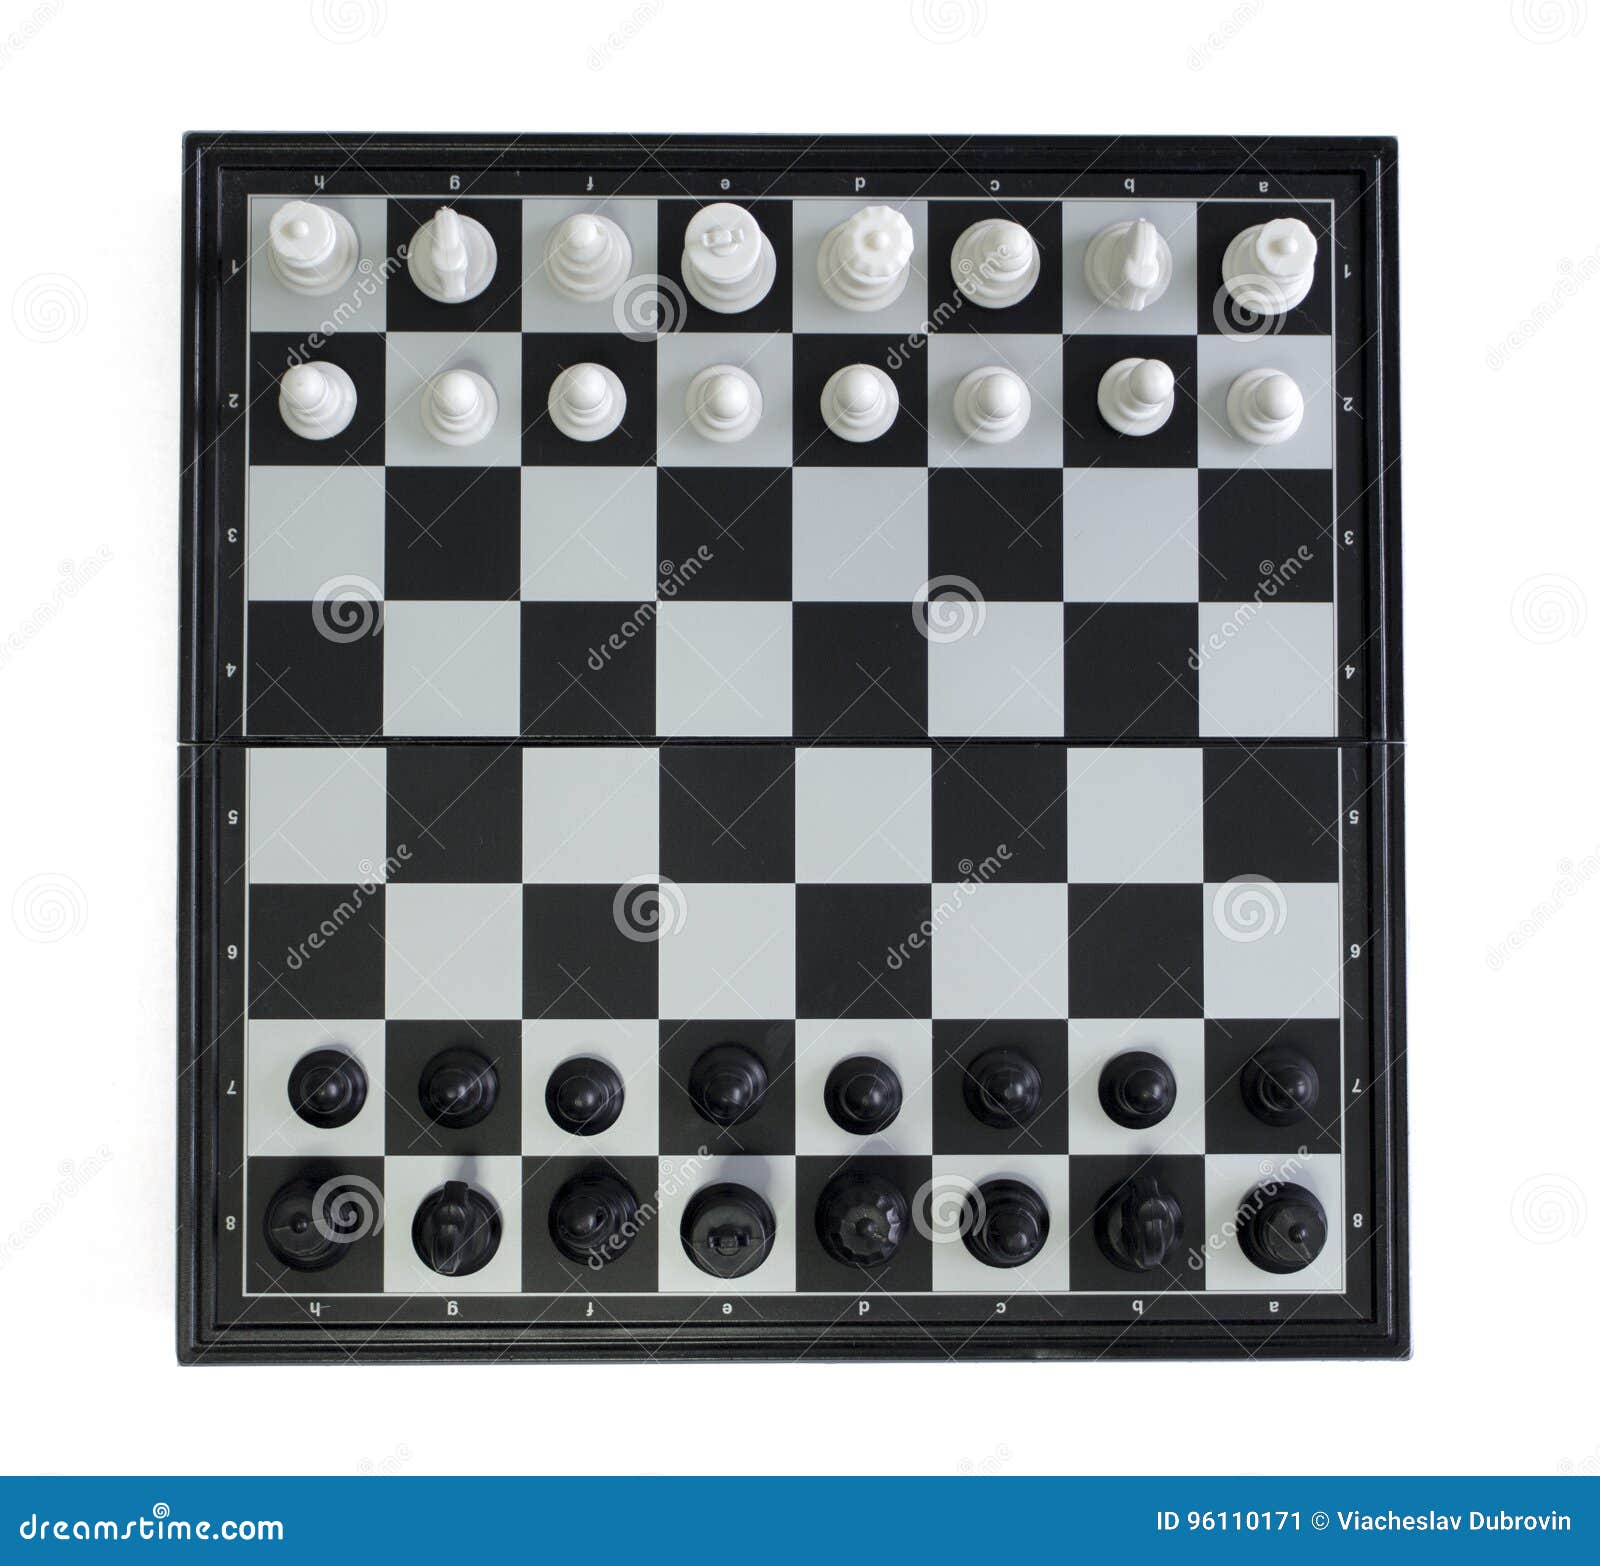 Relógio e peças de xadrez em um tabuleiro de xadrez como pano de fundo o  conceito de jogar e ganhar uma turnê de xadrez